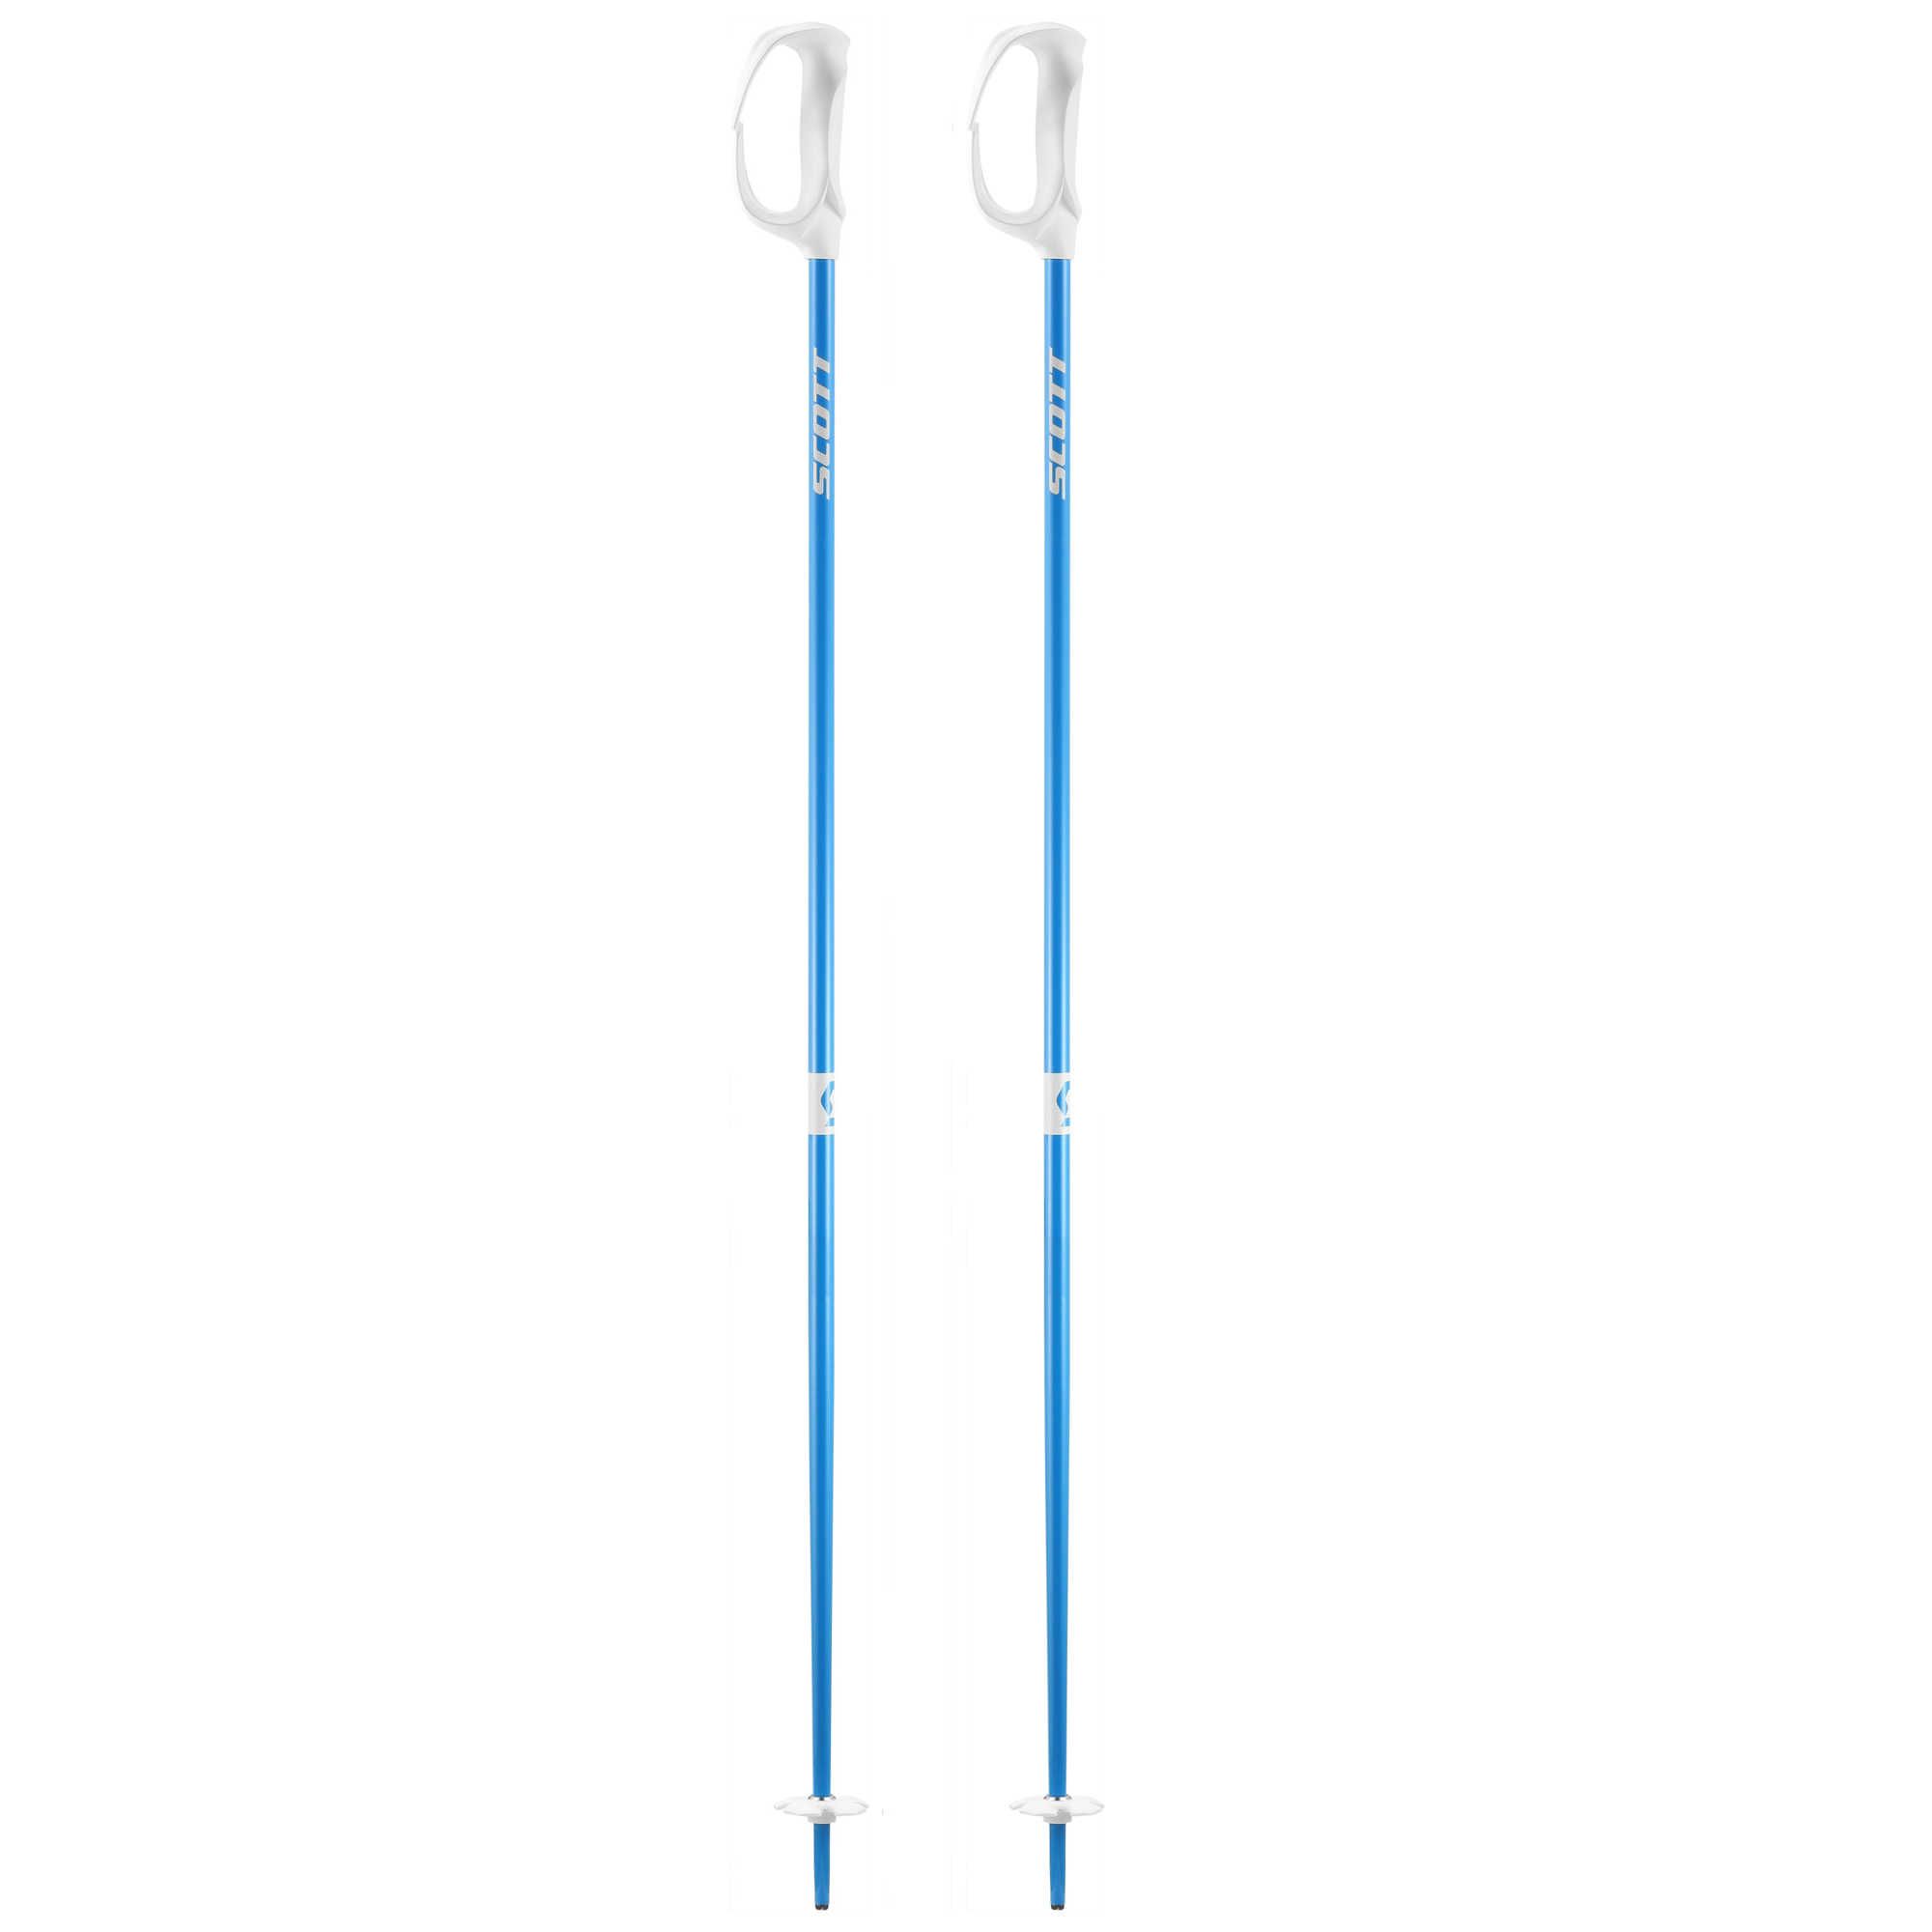 Batons de ski Strapless S Evo - Bleu